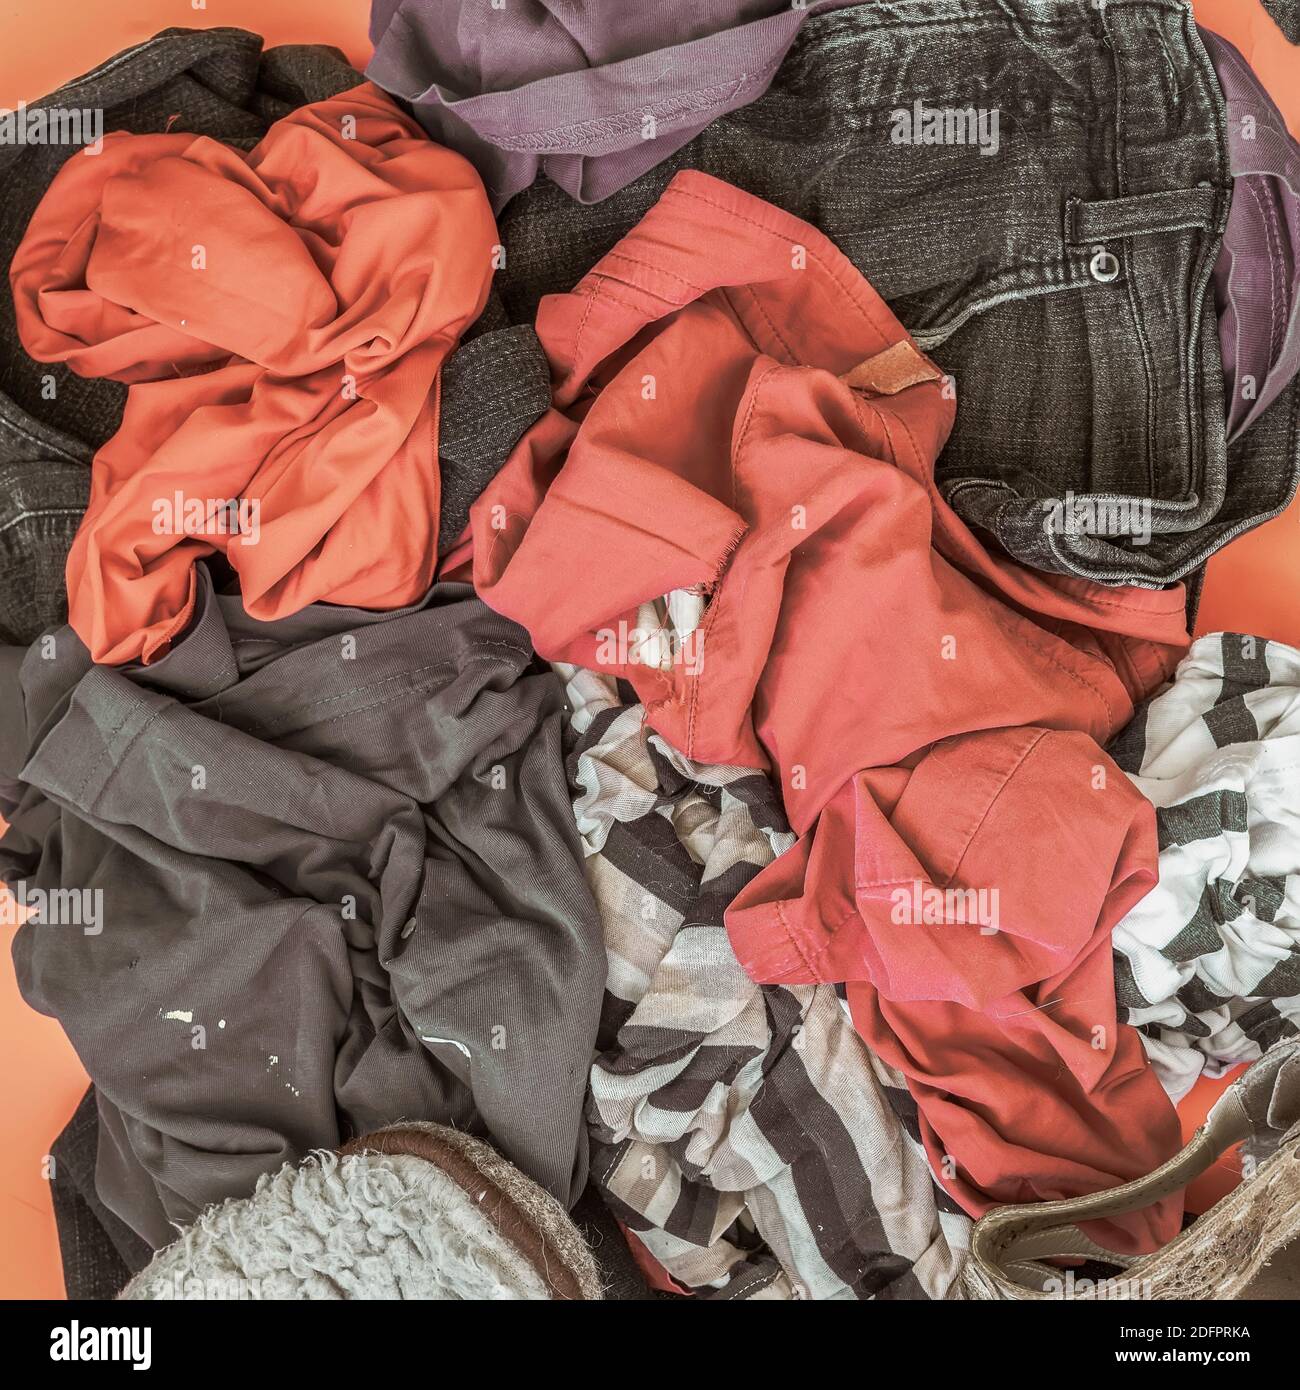 Stapel gebrauchter Kleidung. Entsorgung, gebrauchte, Recycling-Verarbeitungskonzept Stockfoto